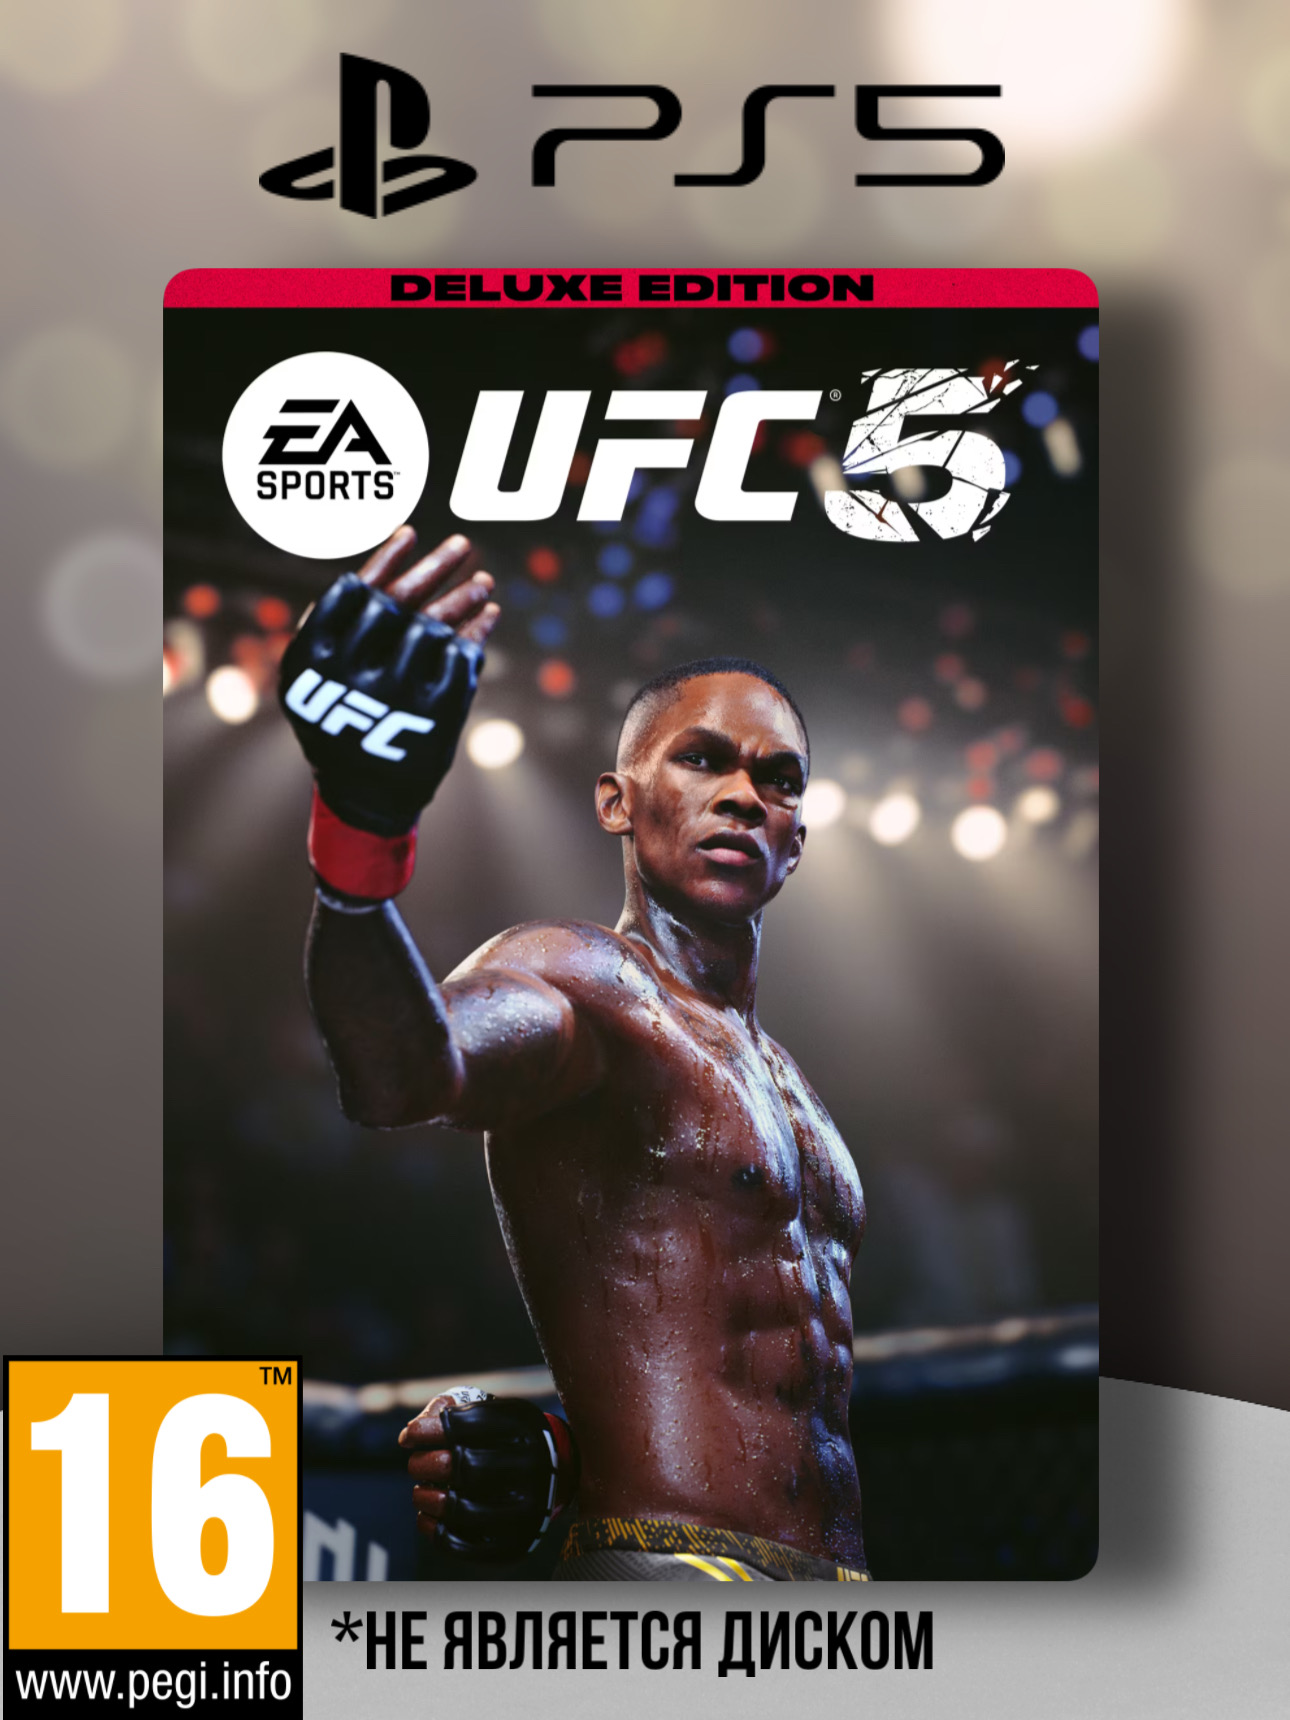 Игра EA Sports UFC 5 Deluxe Edition (PlayStation 5, полностью на иностранном языке) - купить в Москве, цены в интернет-магазинах Мегамаркет